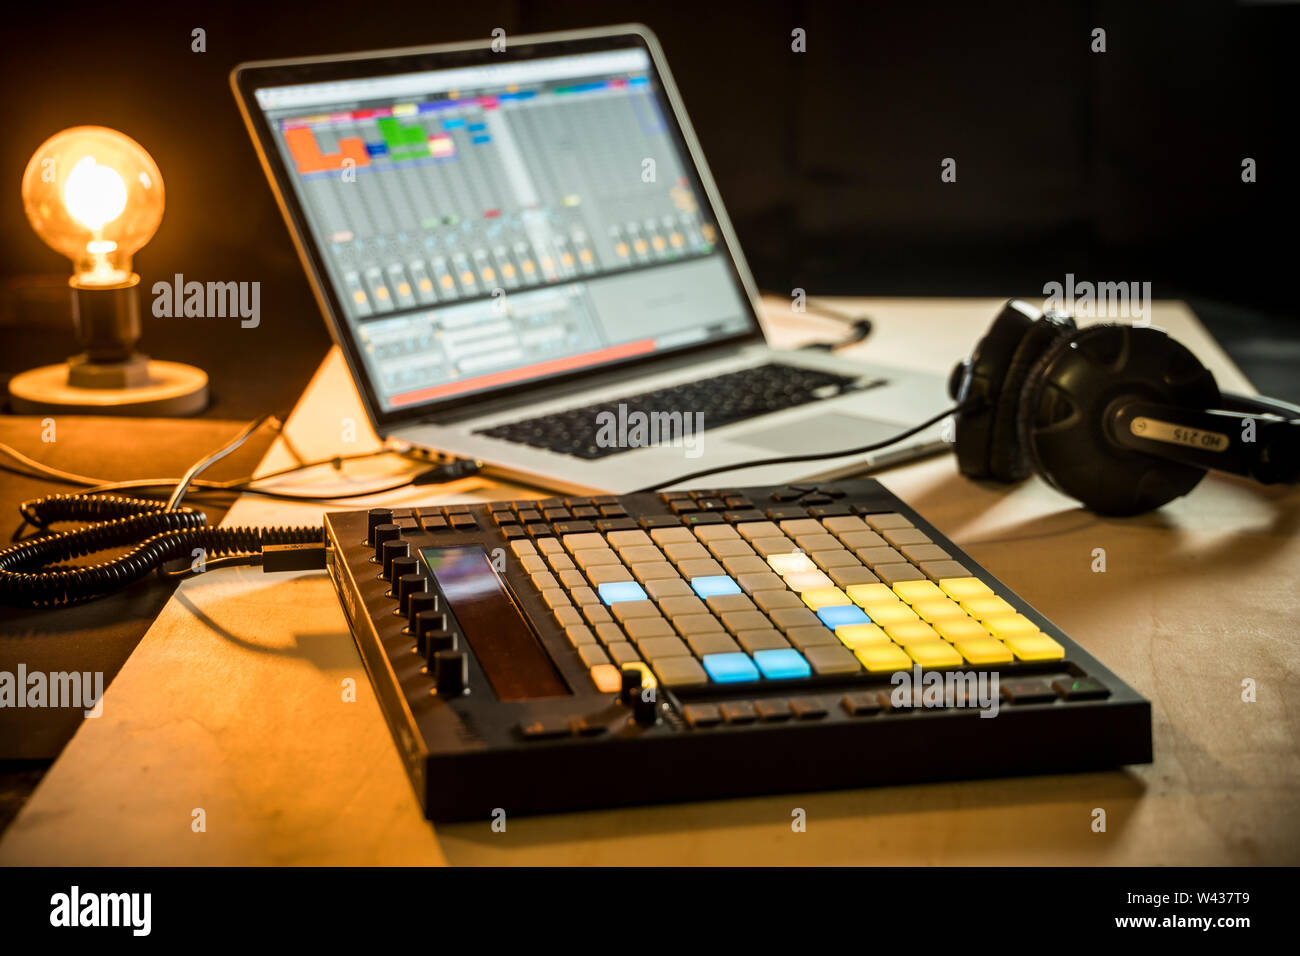 Musica elettronica di produzione. Ableton Live music software su un Macbook Pro Apple, con Push midi pad controller Foto Stock